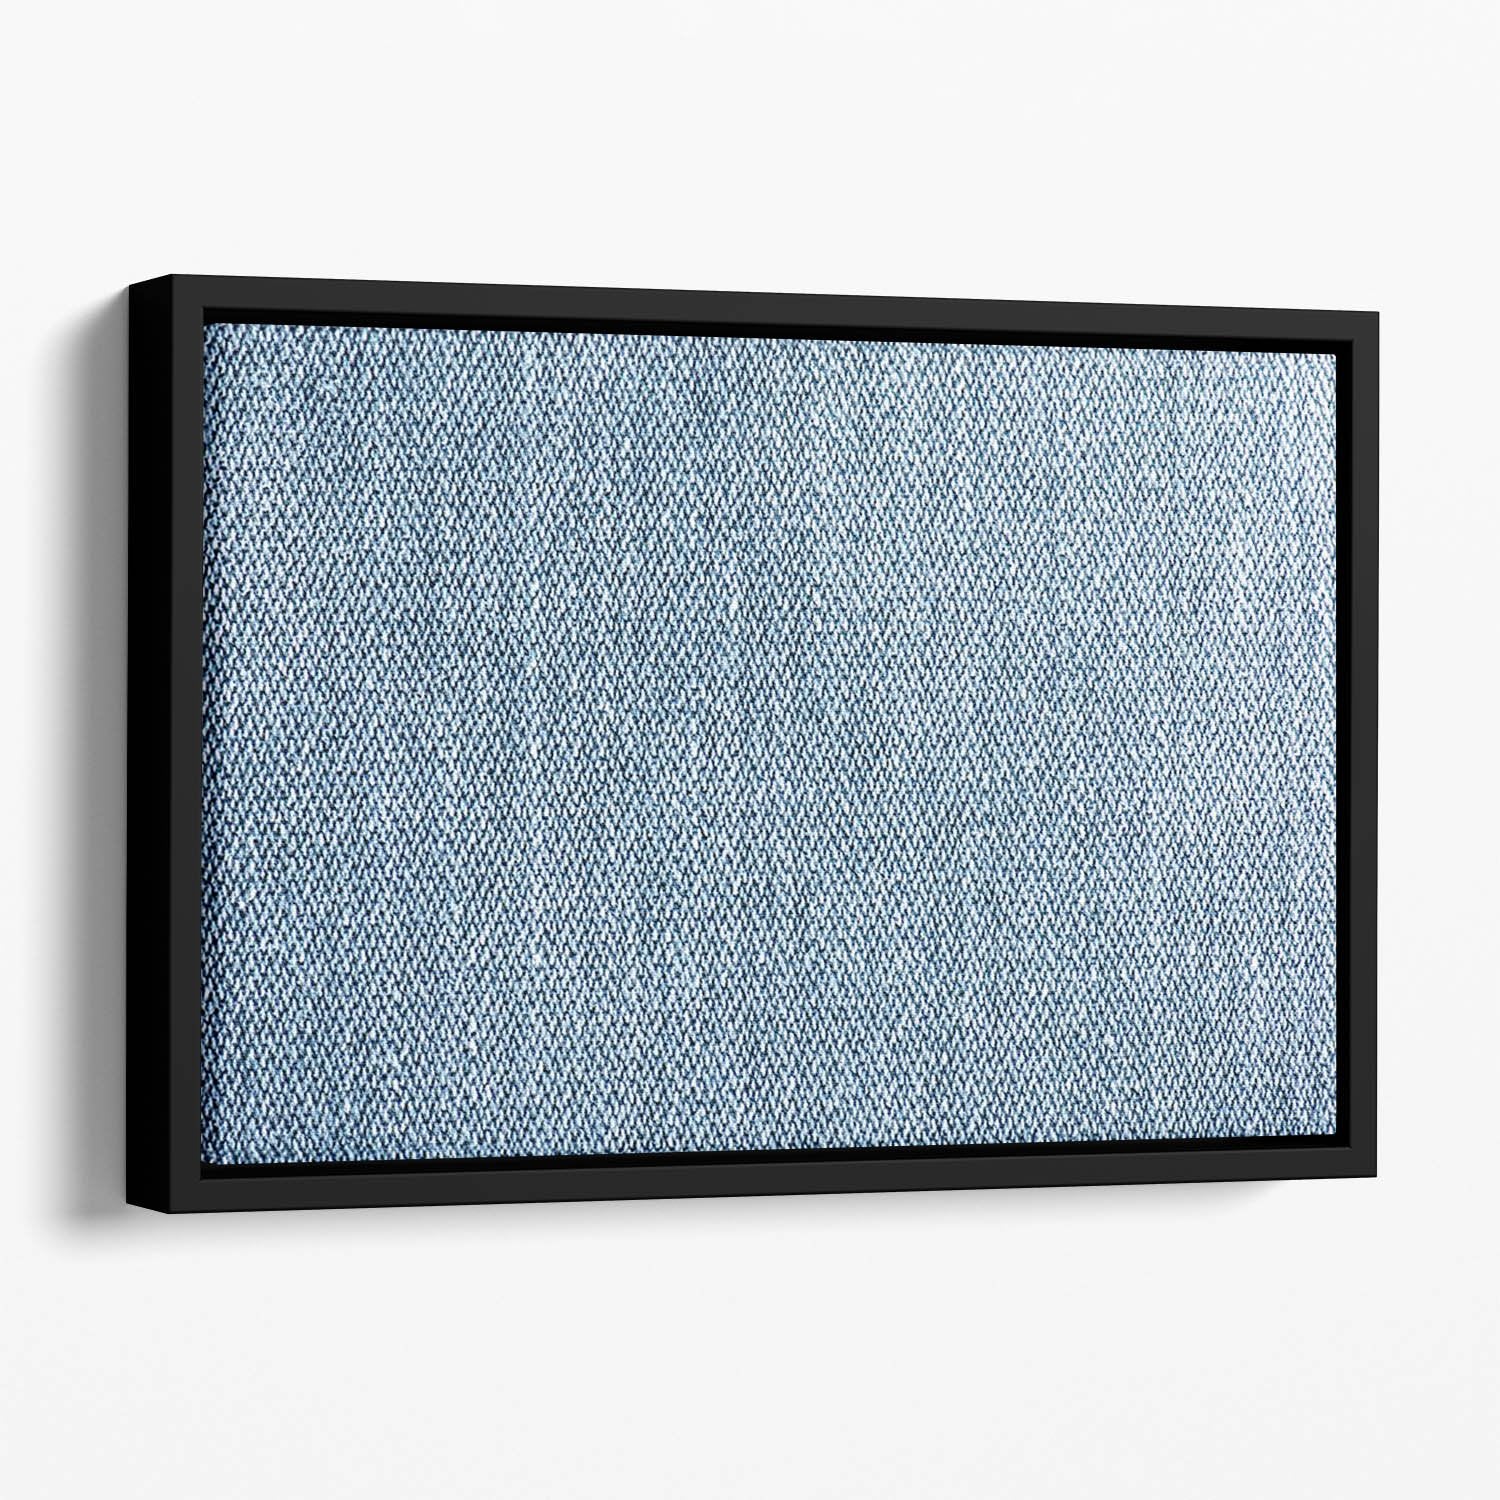 Blue denim texture Floating Framed Canvas